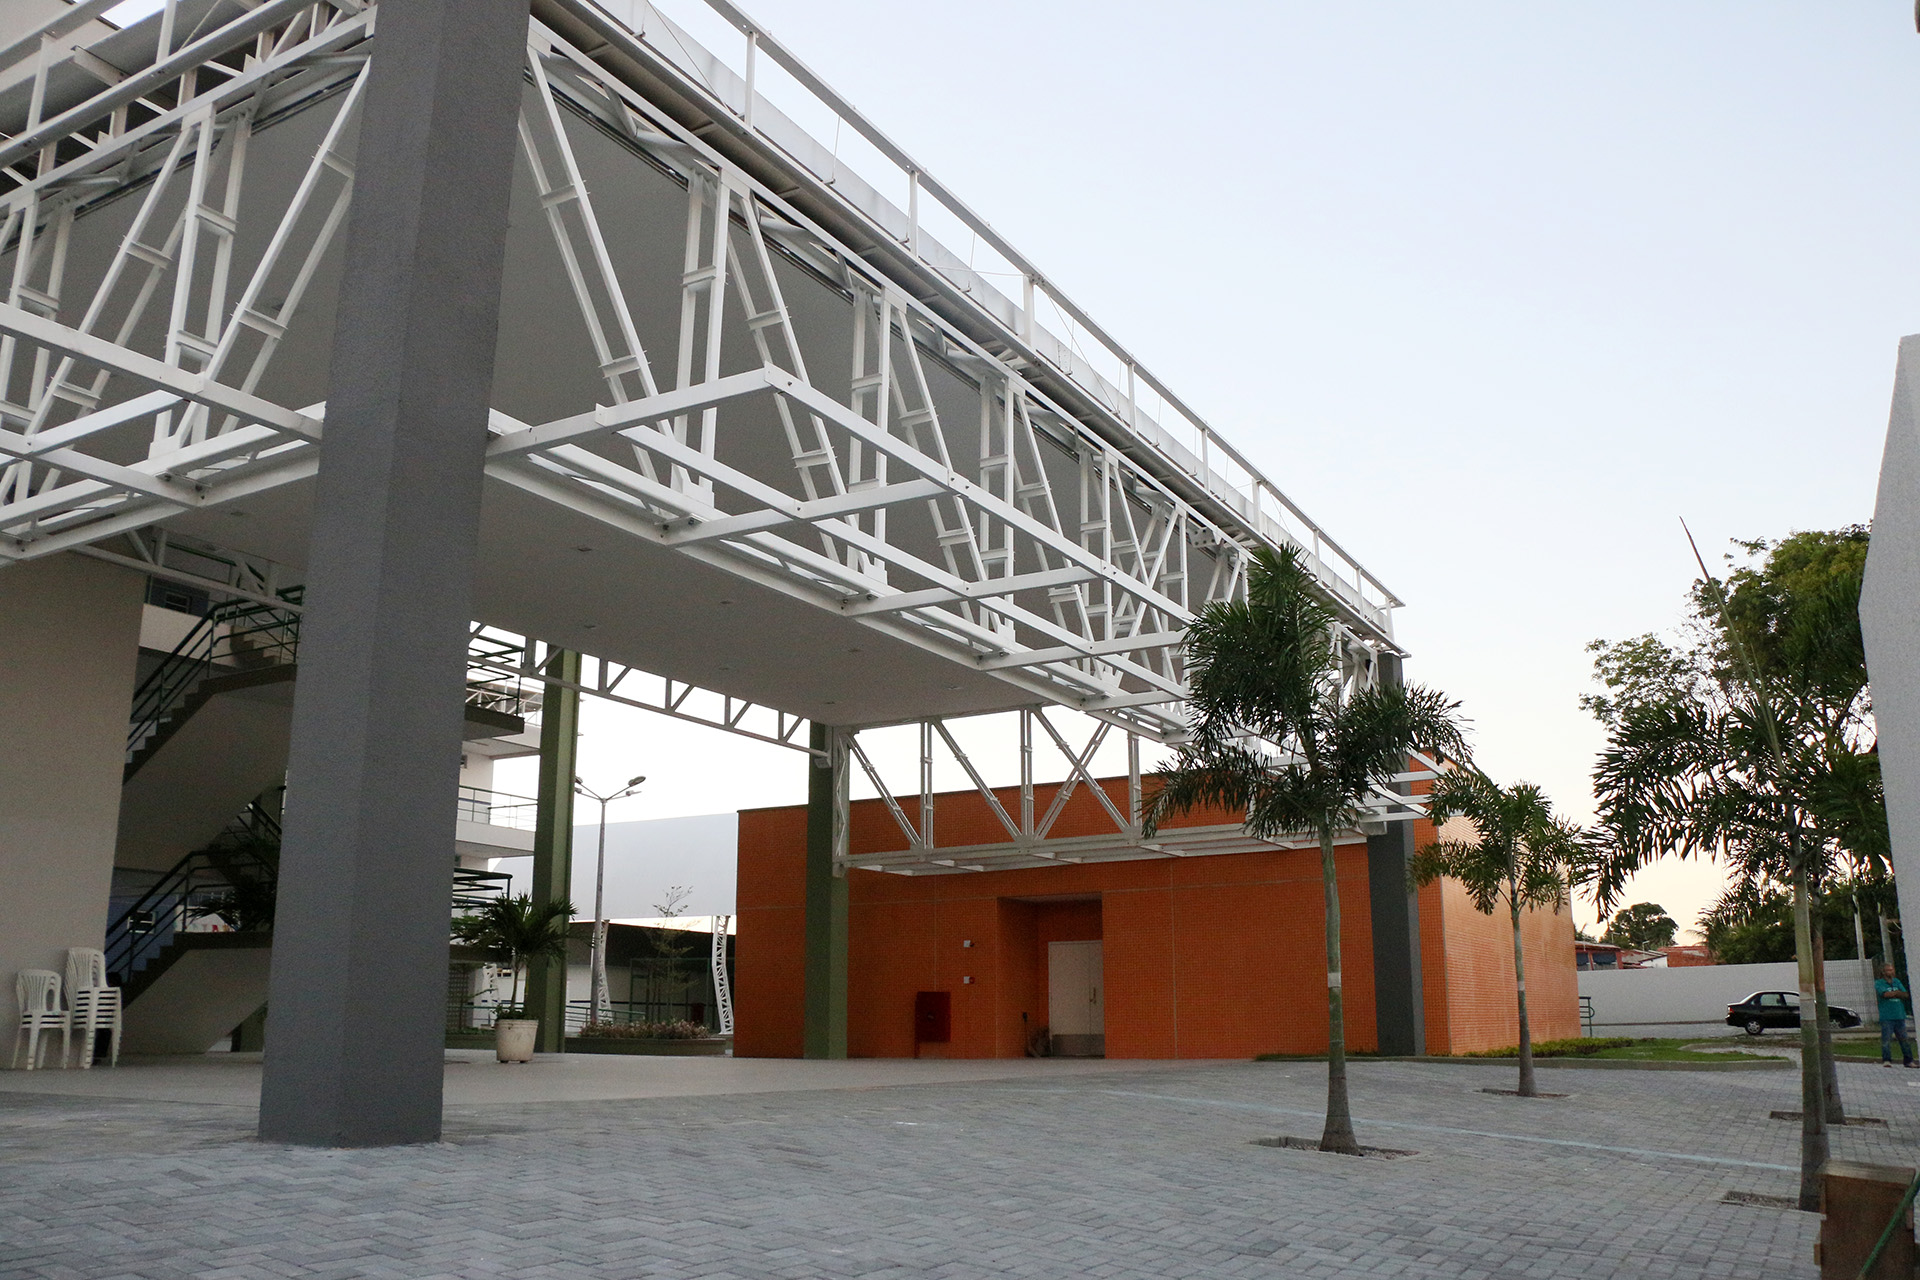 Fachada padrão das escolas de tempo integral construídas pela Prefeitura de Fortaleza